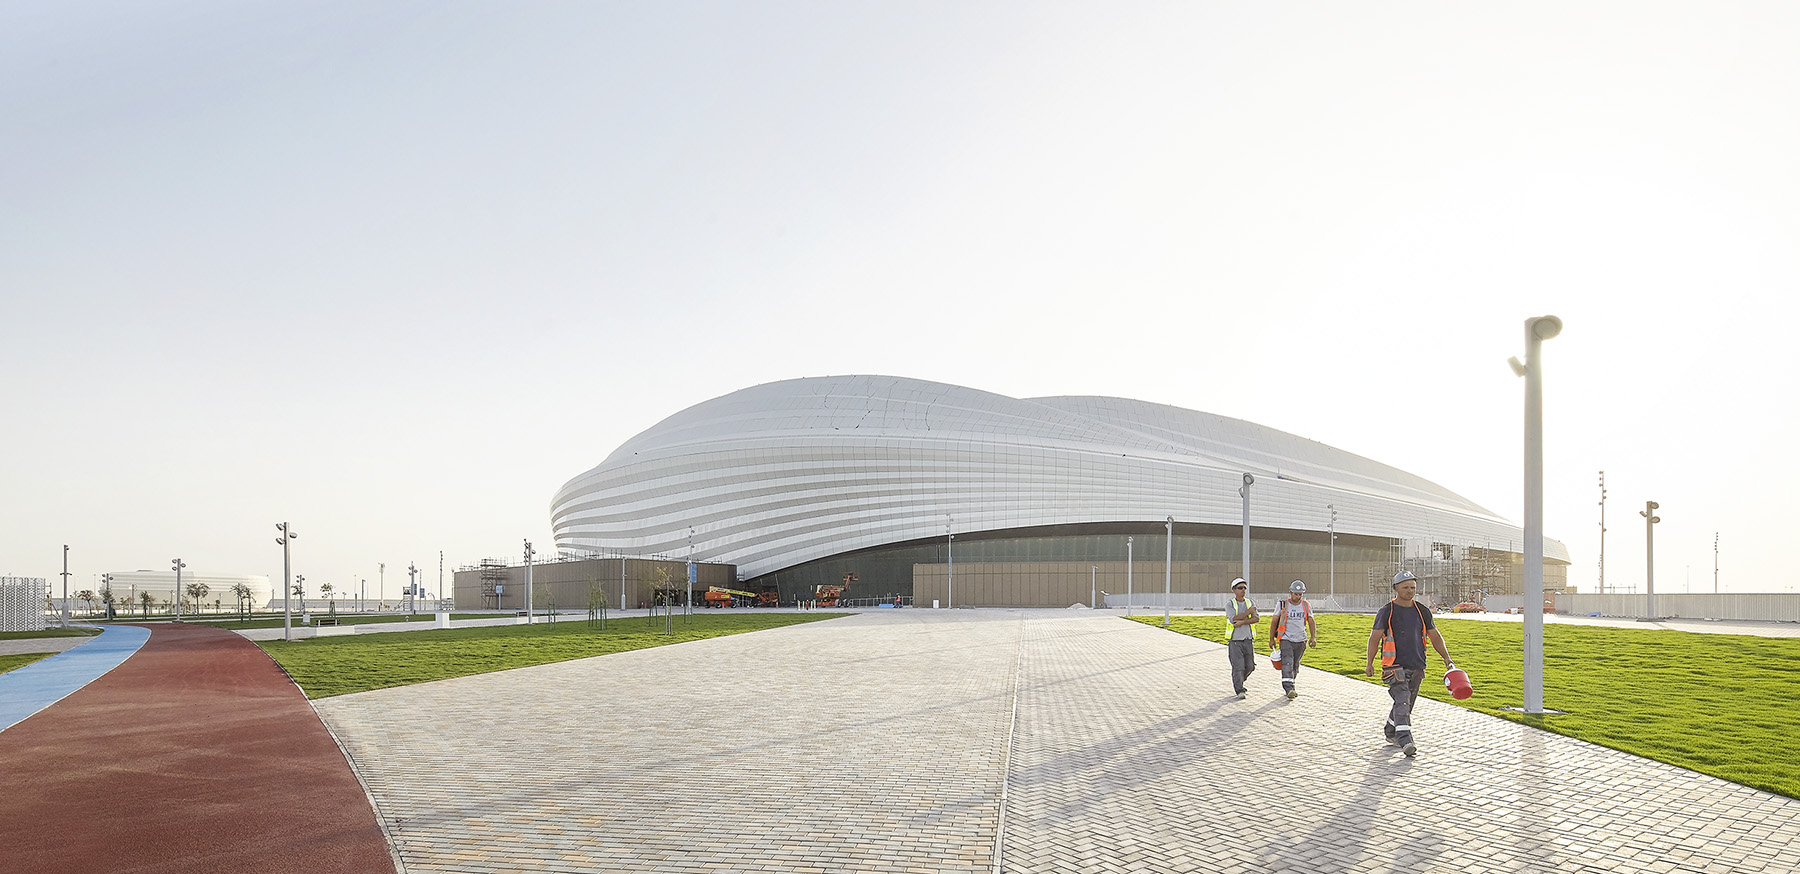 L’architecte Zaha Hadid dessine le stade d’Al Wakrah au Qatar pour la Coupe du monde 2022